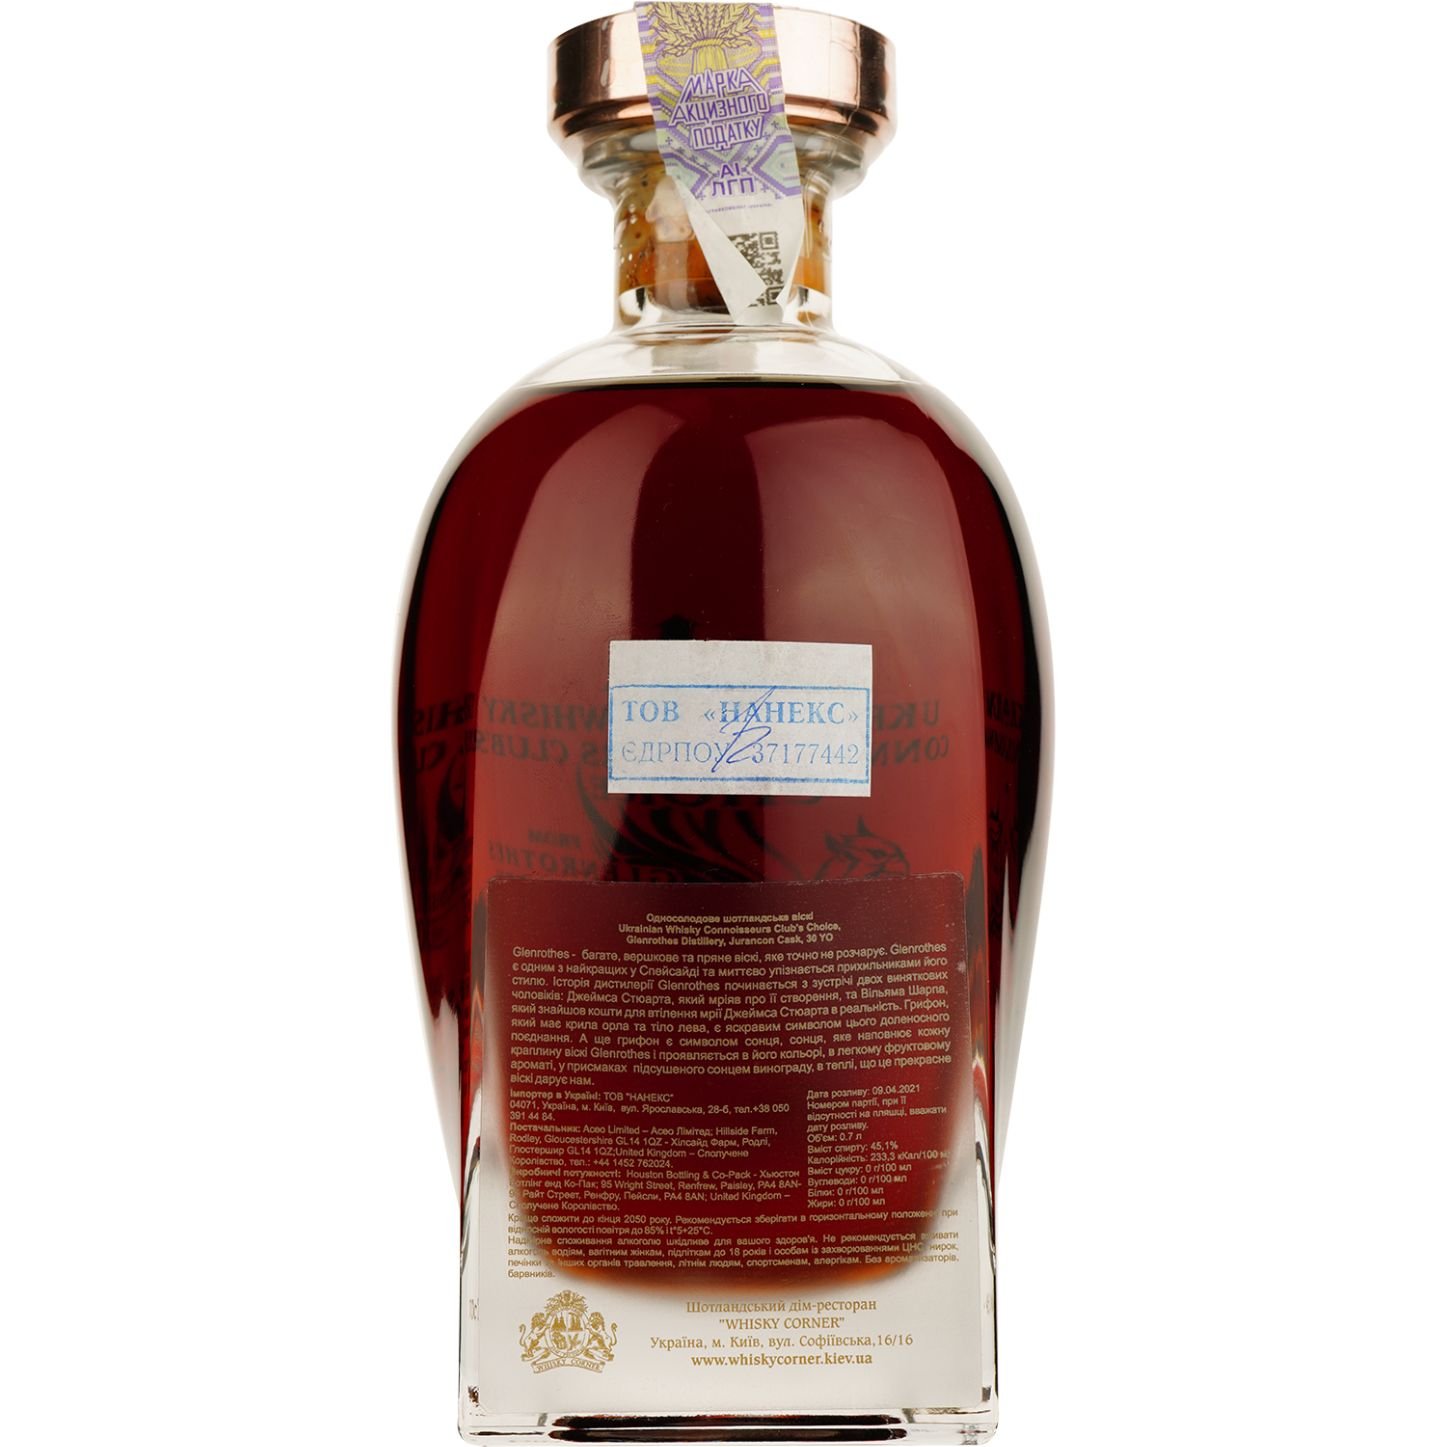 Віскі Glenrothes 30 Years Old Jurancon Single Malt Scotch Whisky, у подарунковій упаковці, 45,1%, 0,7 л - фото 5